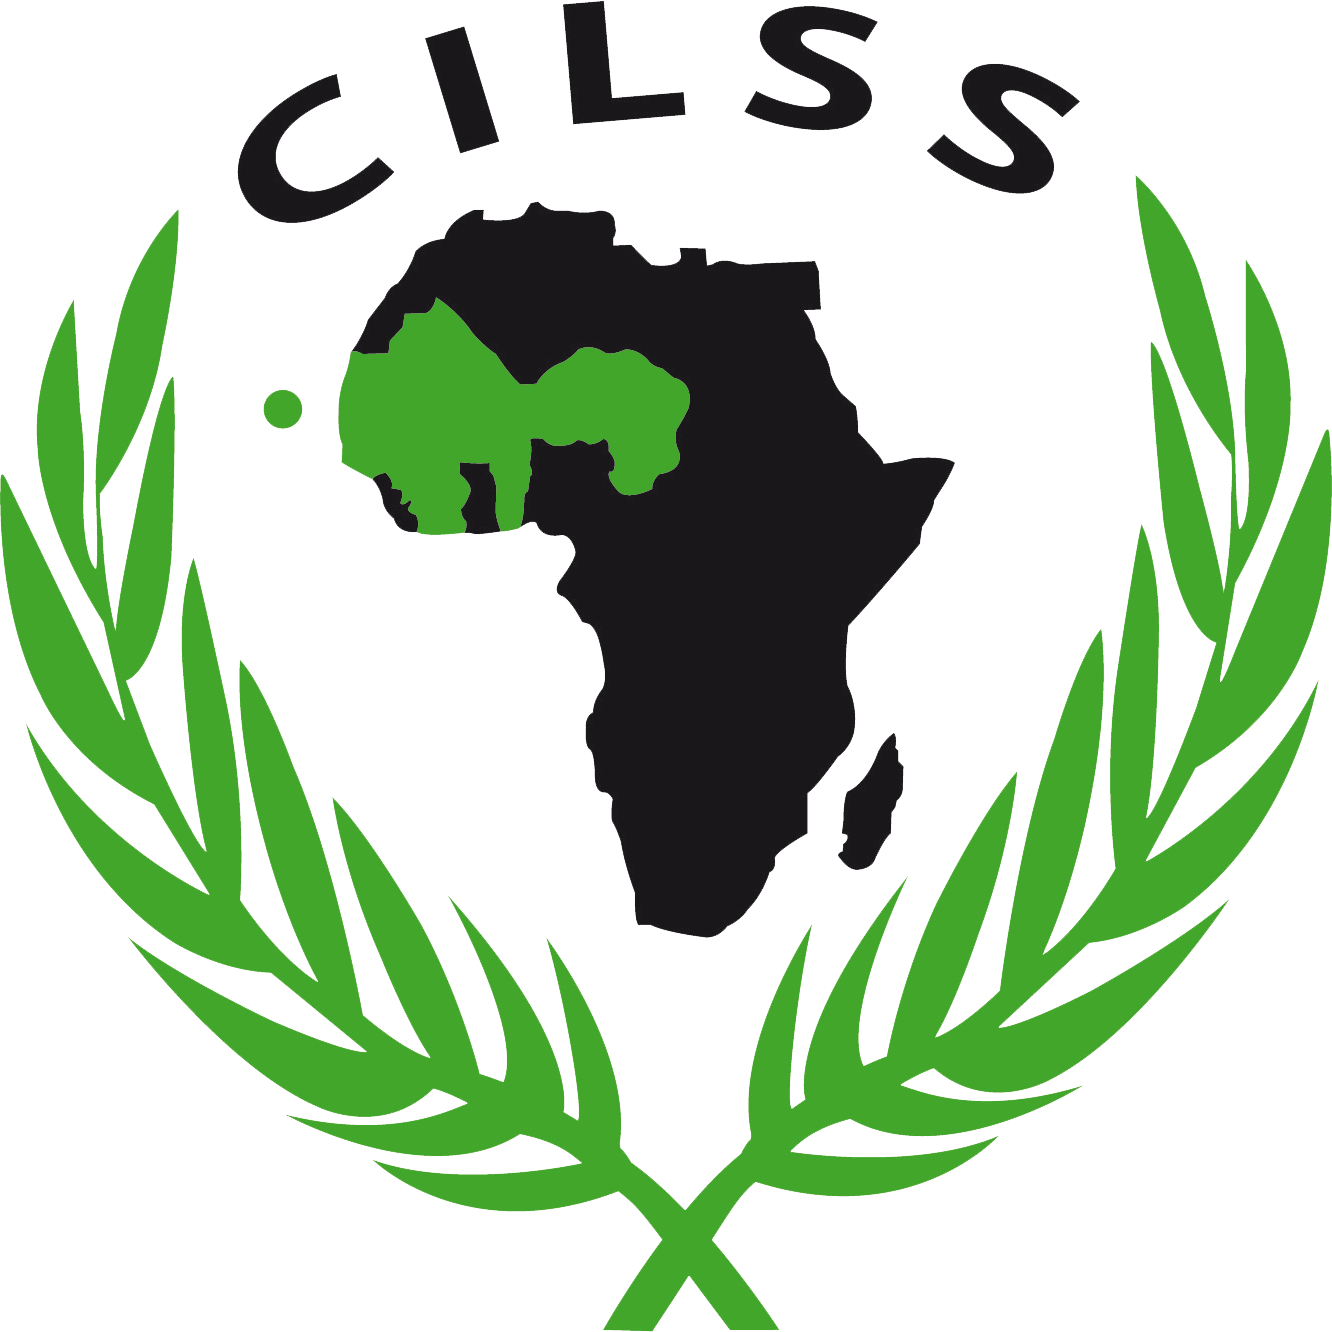 cilss_logo-transparent